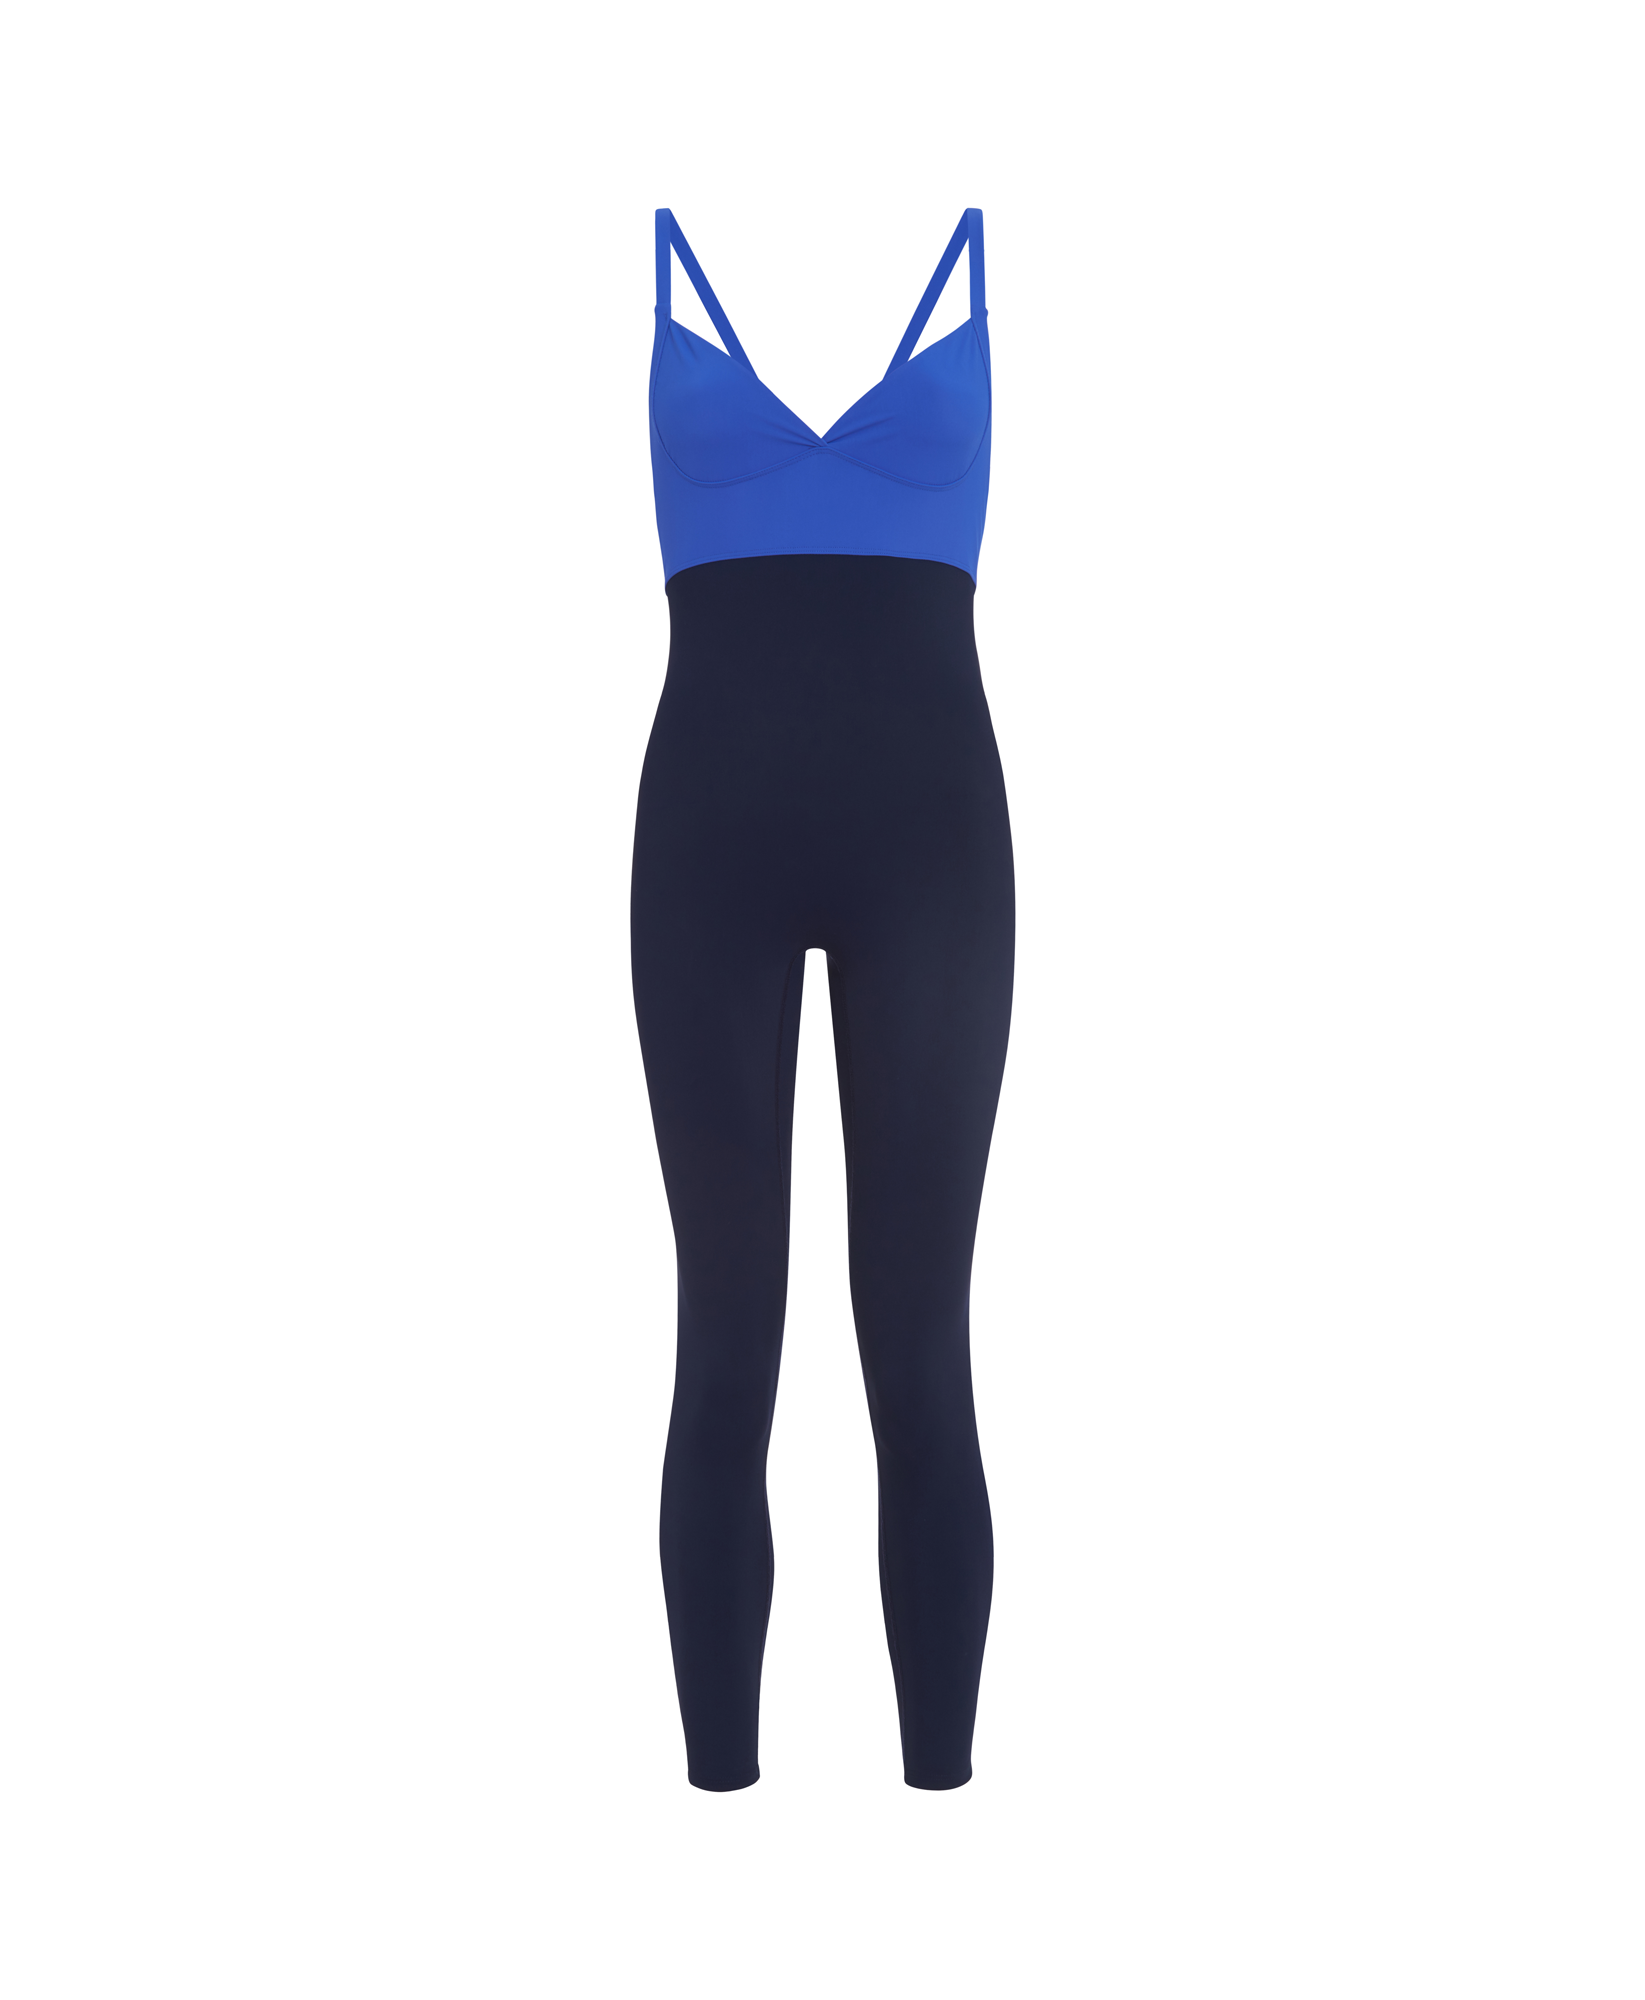 Alo Blue Bodysuits for Women